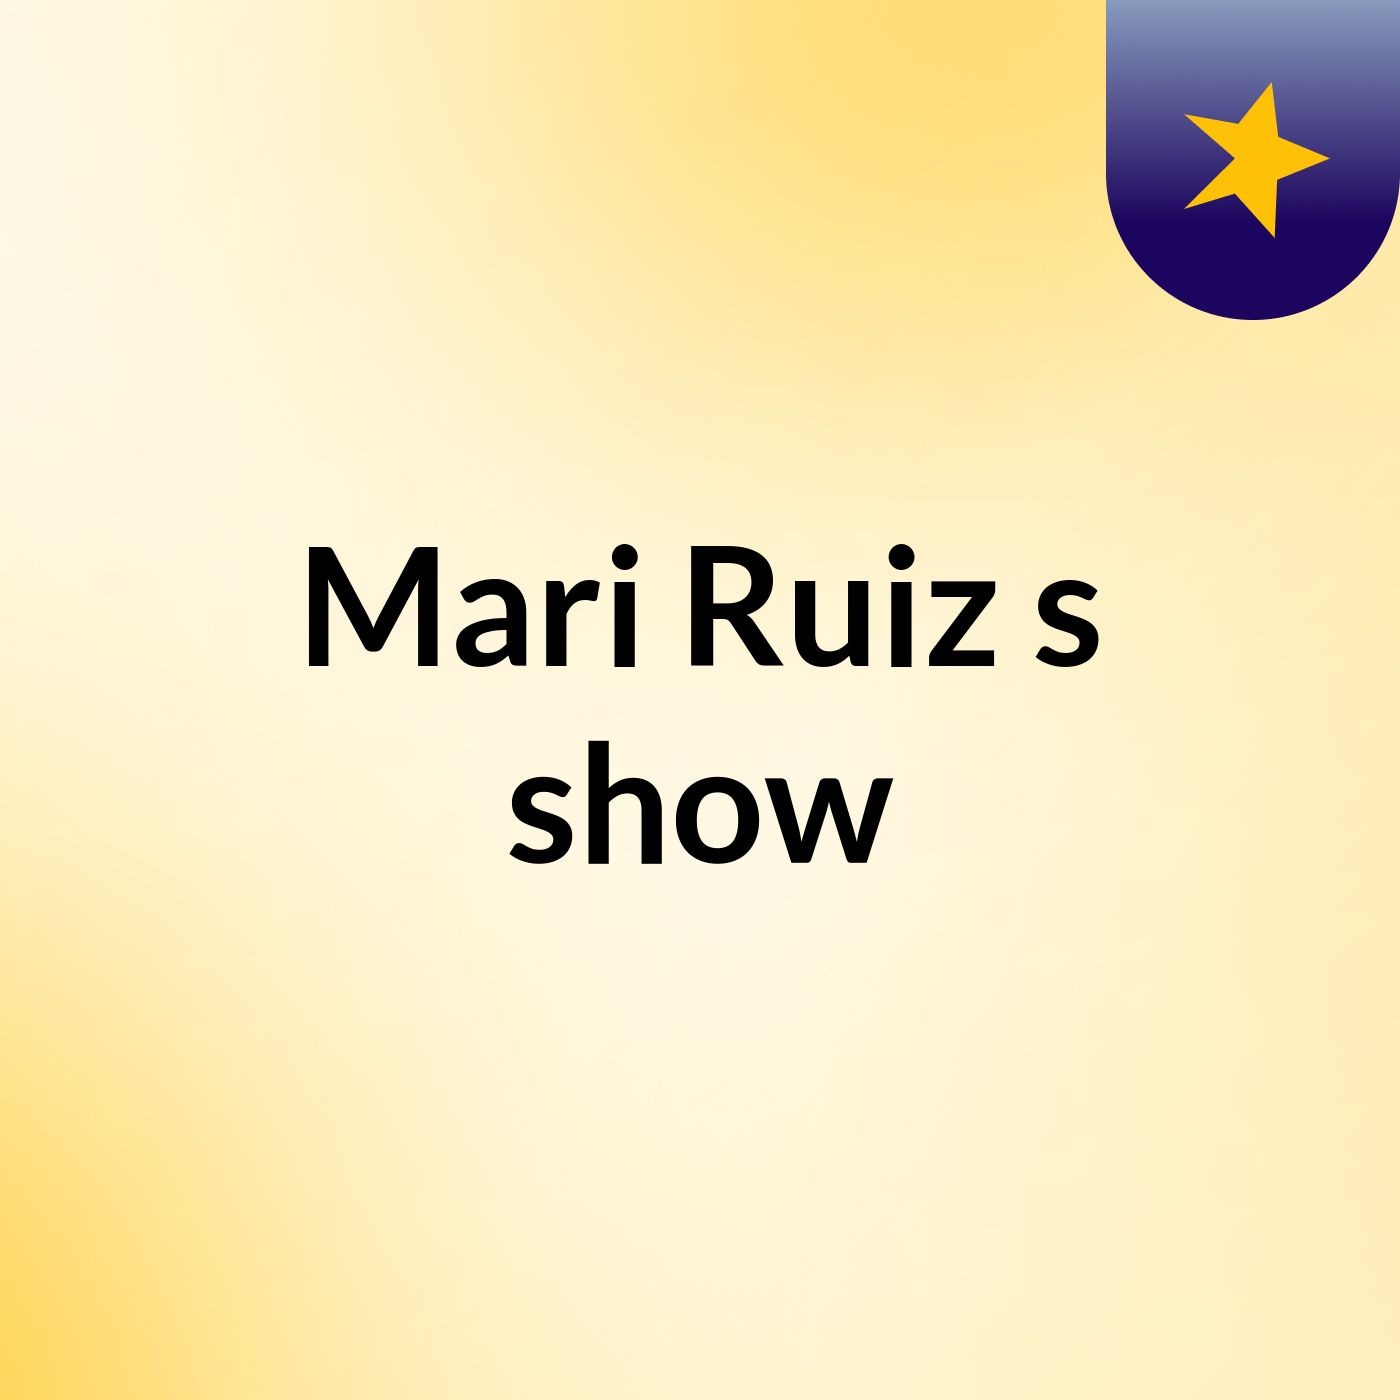 Mari Ruiz's show